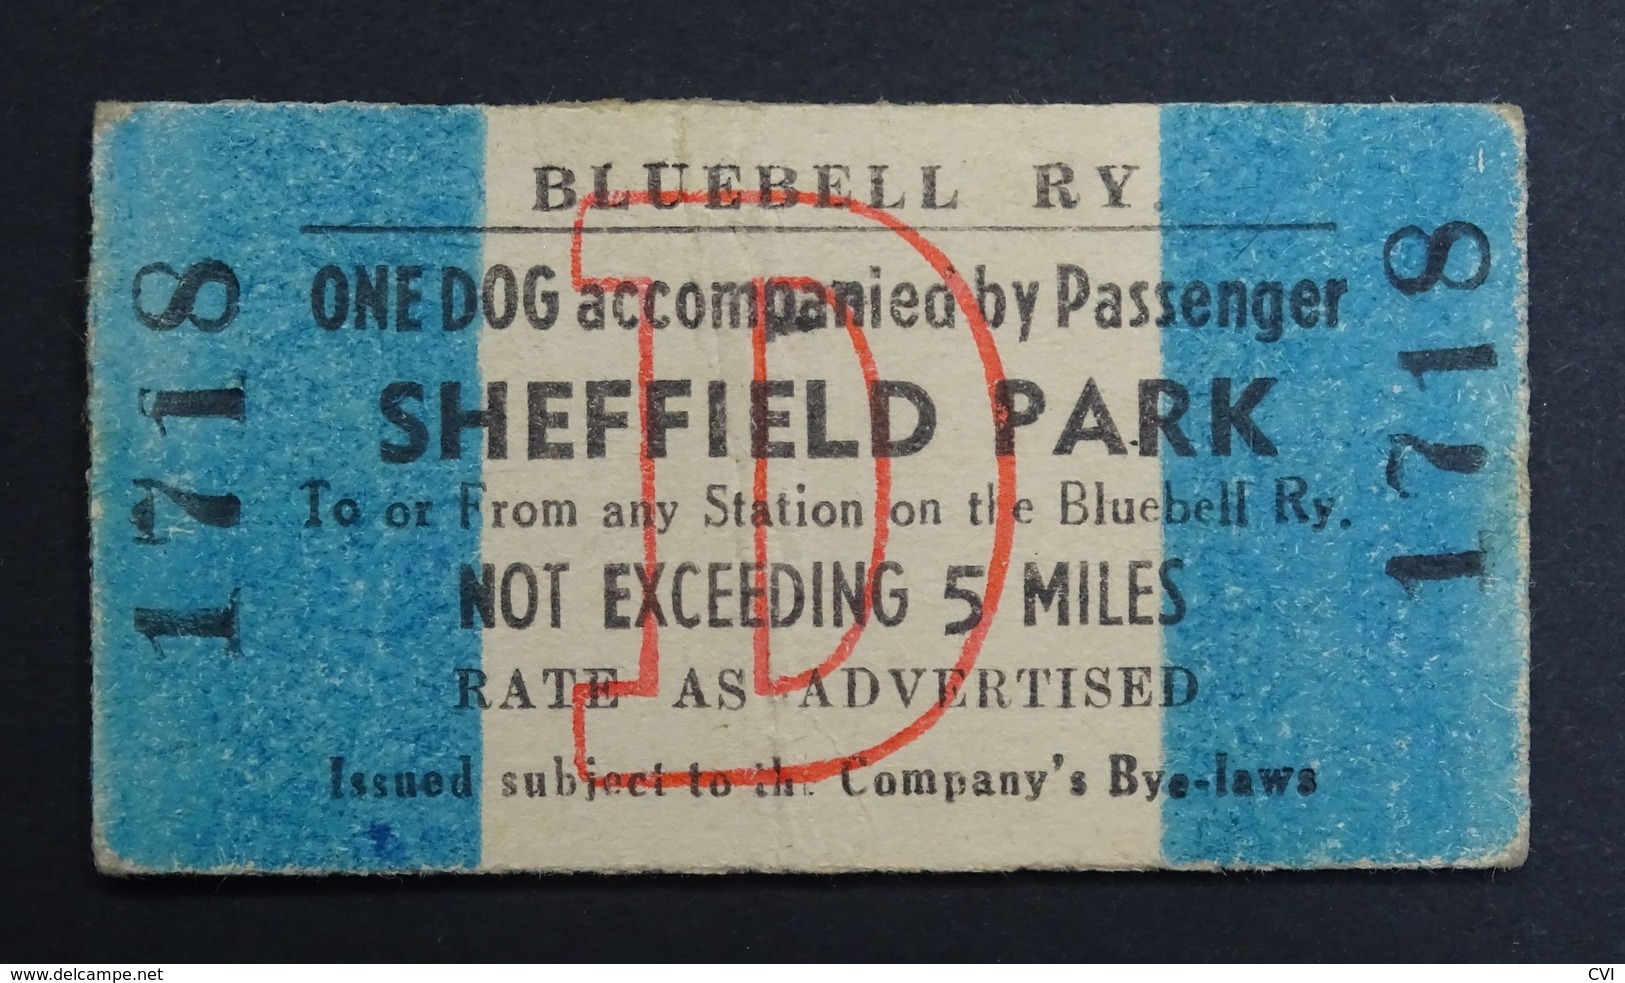 Bluebell Railway Ticket, Dog & Passenger Sheffield Park, United Kingdom (UK). - Europe